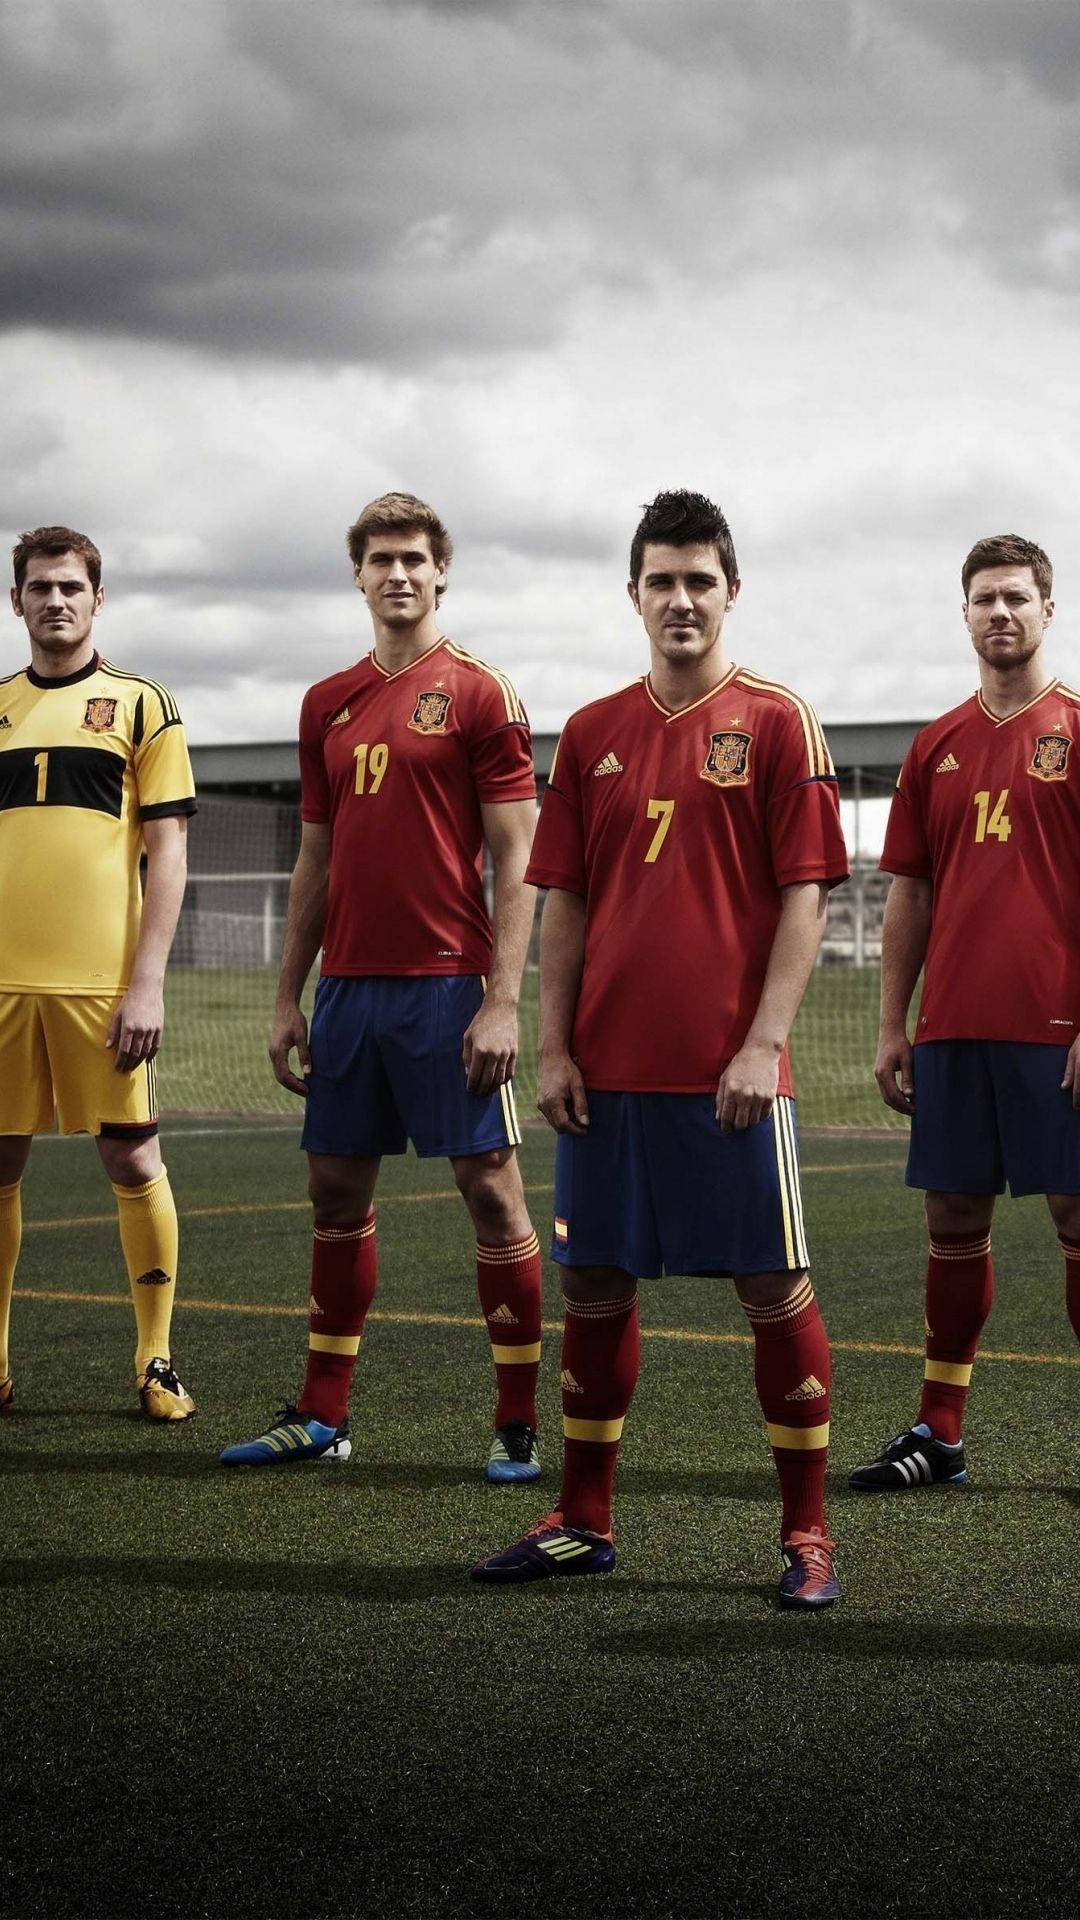 - Papel De Parede Para Computador Ou Celular Com O Tema Da Seleção Nacional De Futebol Da Espanha Na Uefa De 2012. Papel de Parede